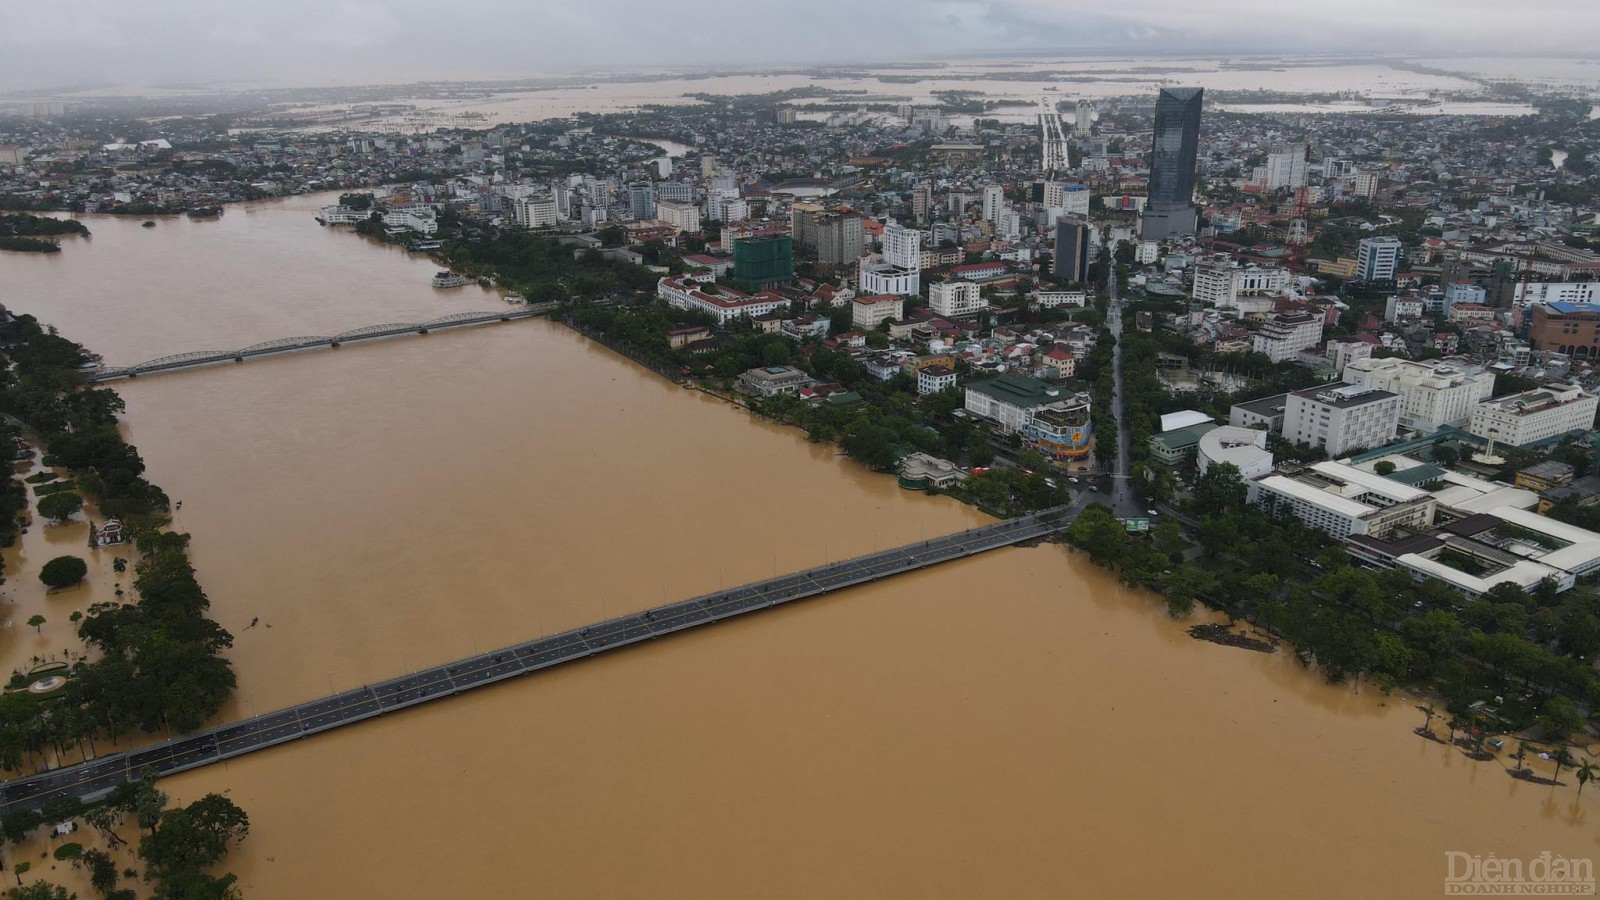 Mưa lũ vẫn còn kéo dài khiến Thừa Thiên Huế thiệt hại nặng nề, đã có ít nhất 3 người chết, nhiều người bị thương và mất tích; hơn 53.000 ngôi nhà ngập lụt...